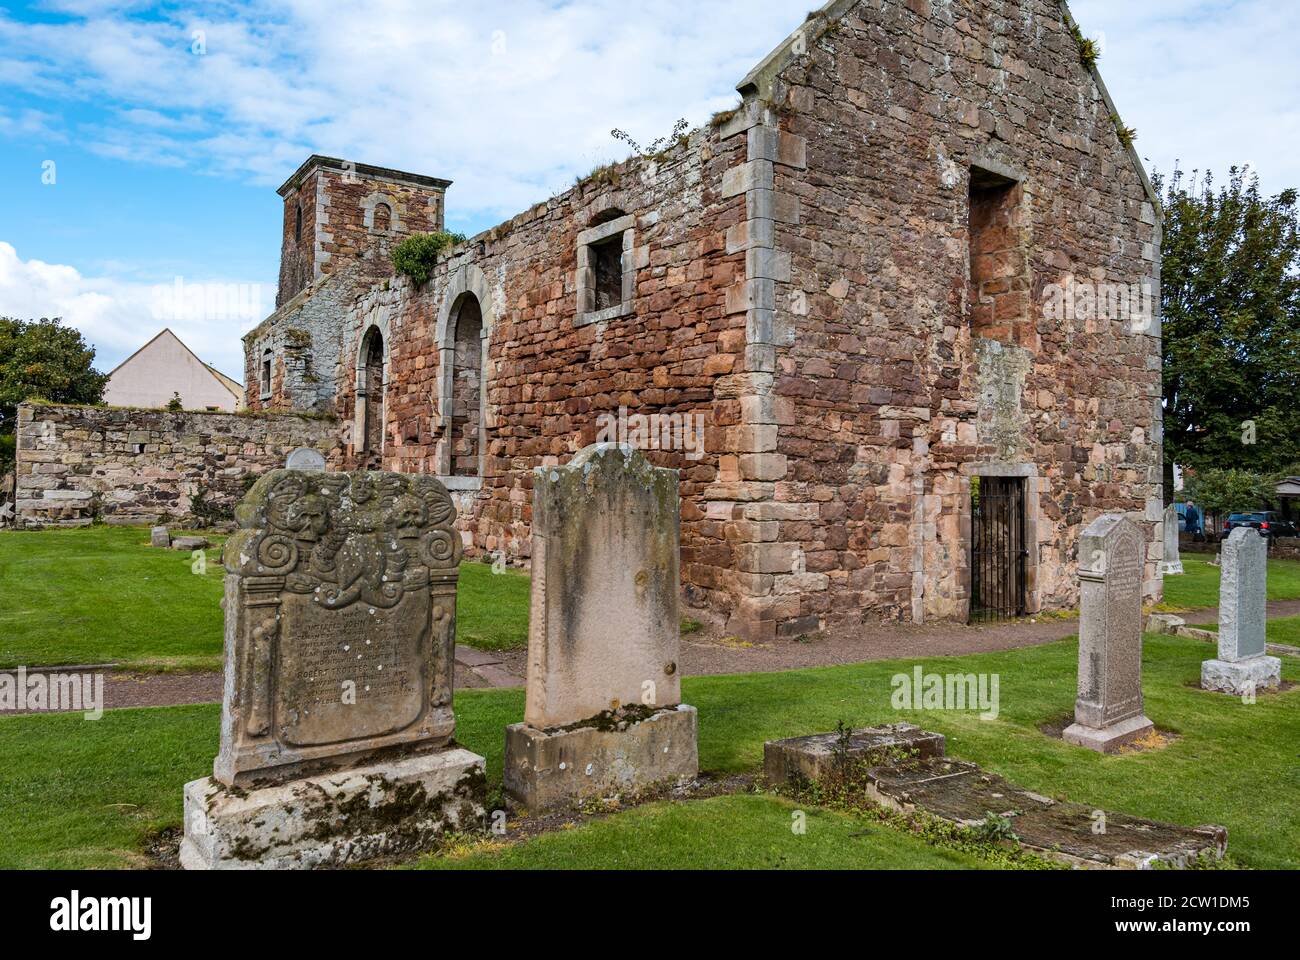 Ruiniert und dachlos 17. Jahrhundert Old St Andrew's Church und alte Gräber auf dem Friedhof, North Berwick, East Lothian, Schottland, Großbritannien Stockfoto